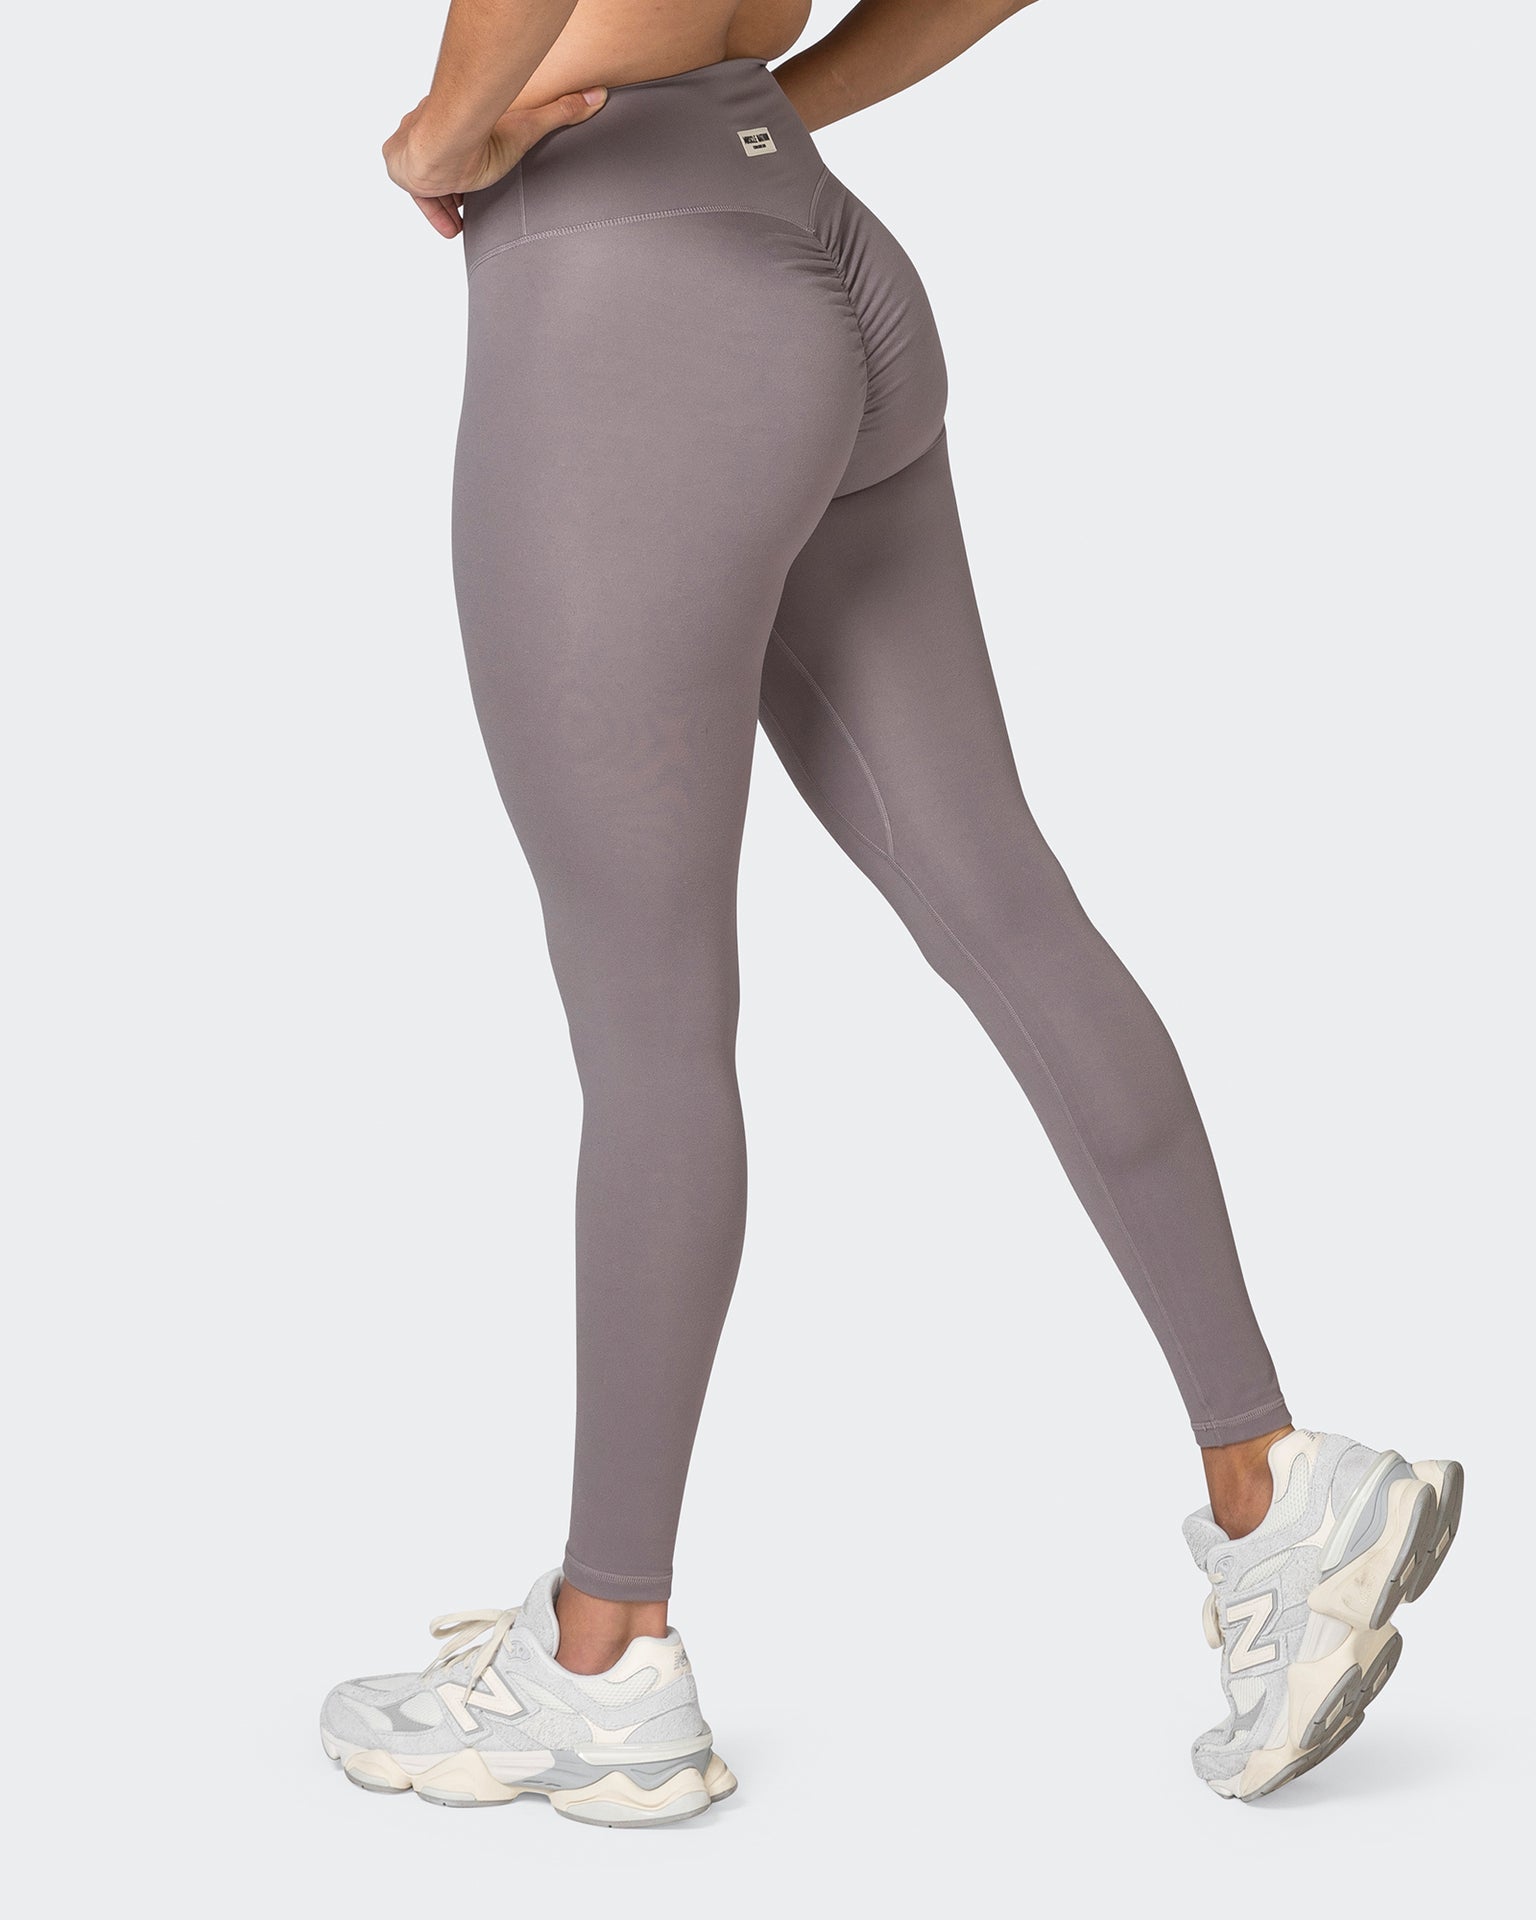 Muscle Nation Gym Leggings Game Changer Scrunch Full Length Leggings - Pearl Grey